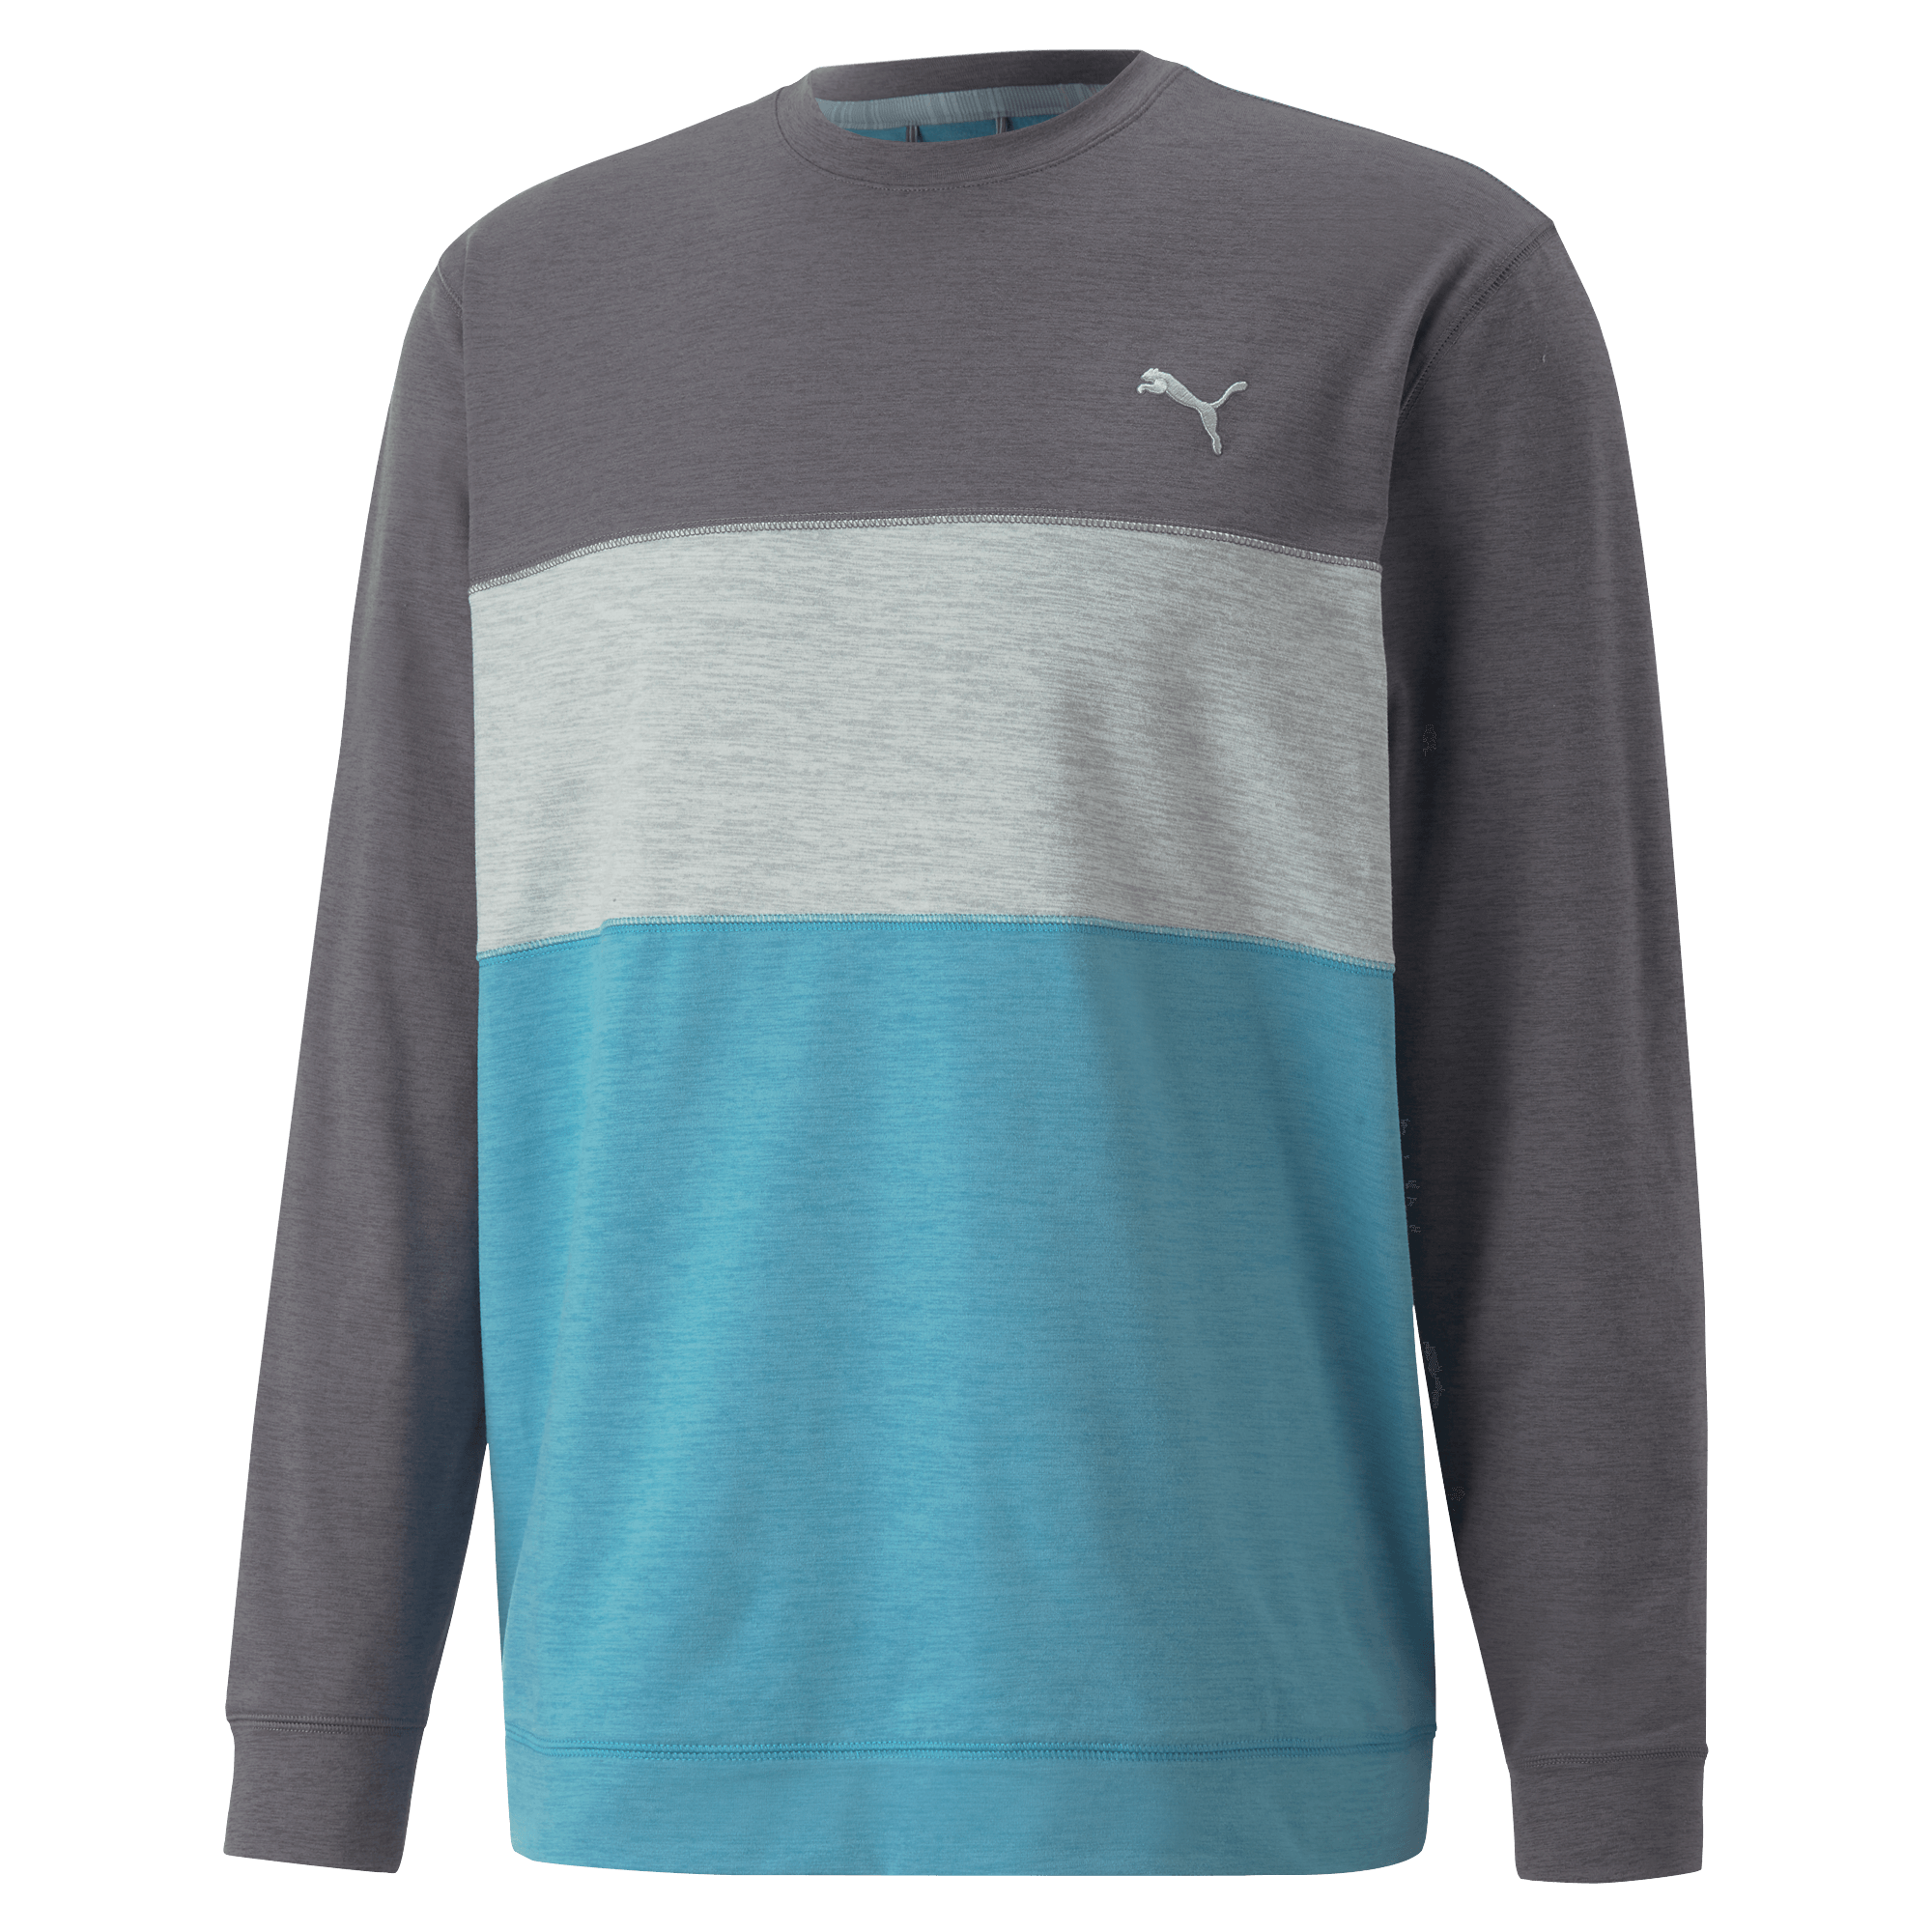 Puma Cloudspun Colorblock Crewneck Golf Sweater